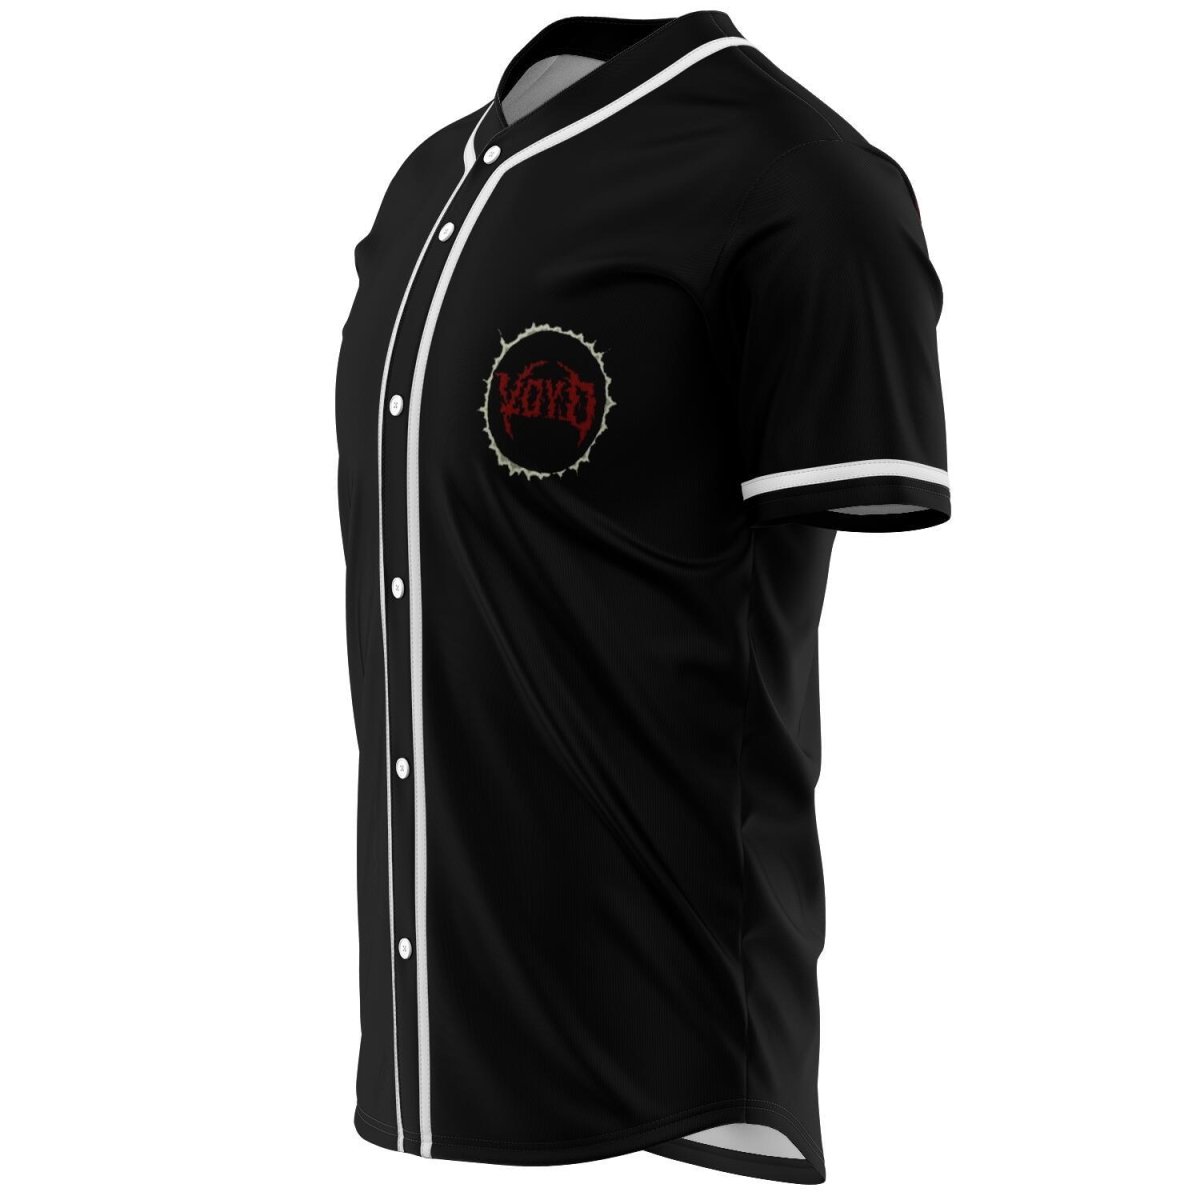 Svdden death cool design rave baseball jersey for EDM festivals